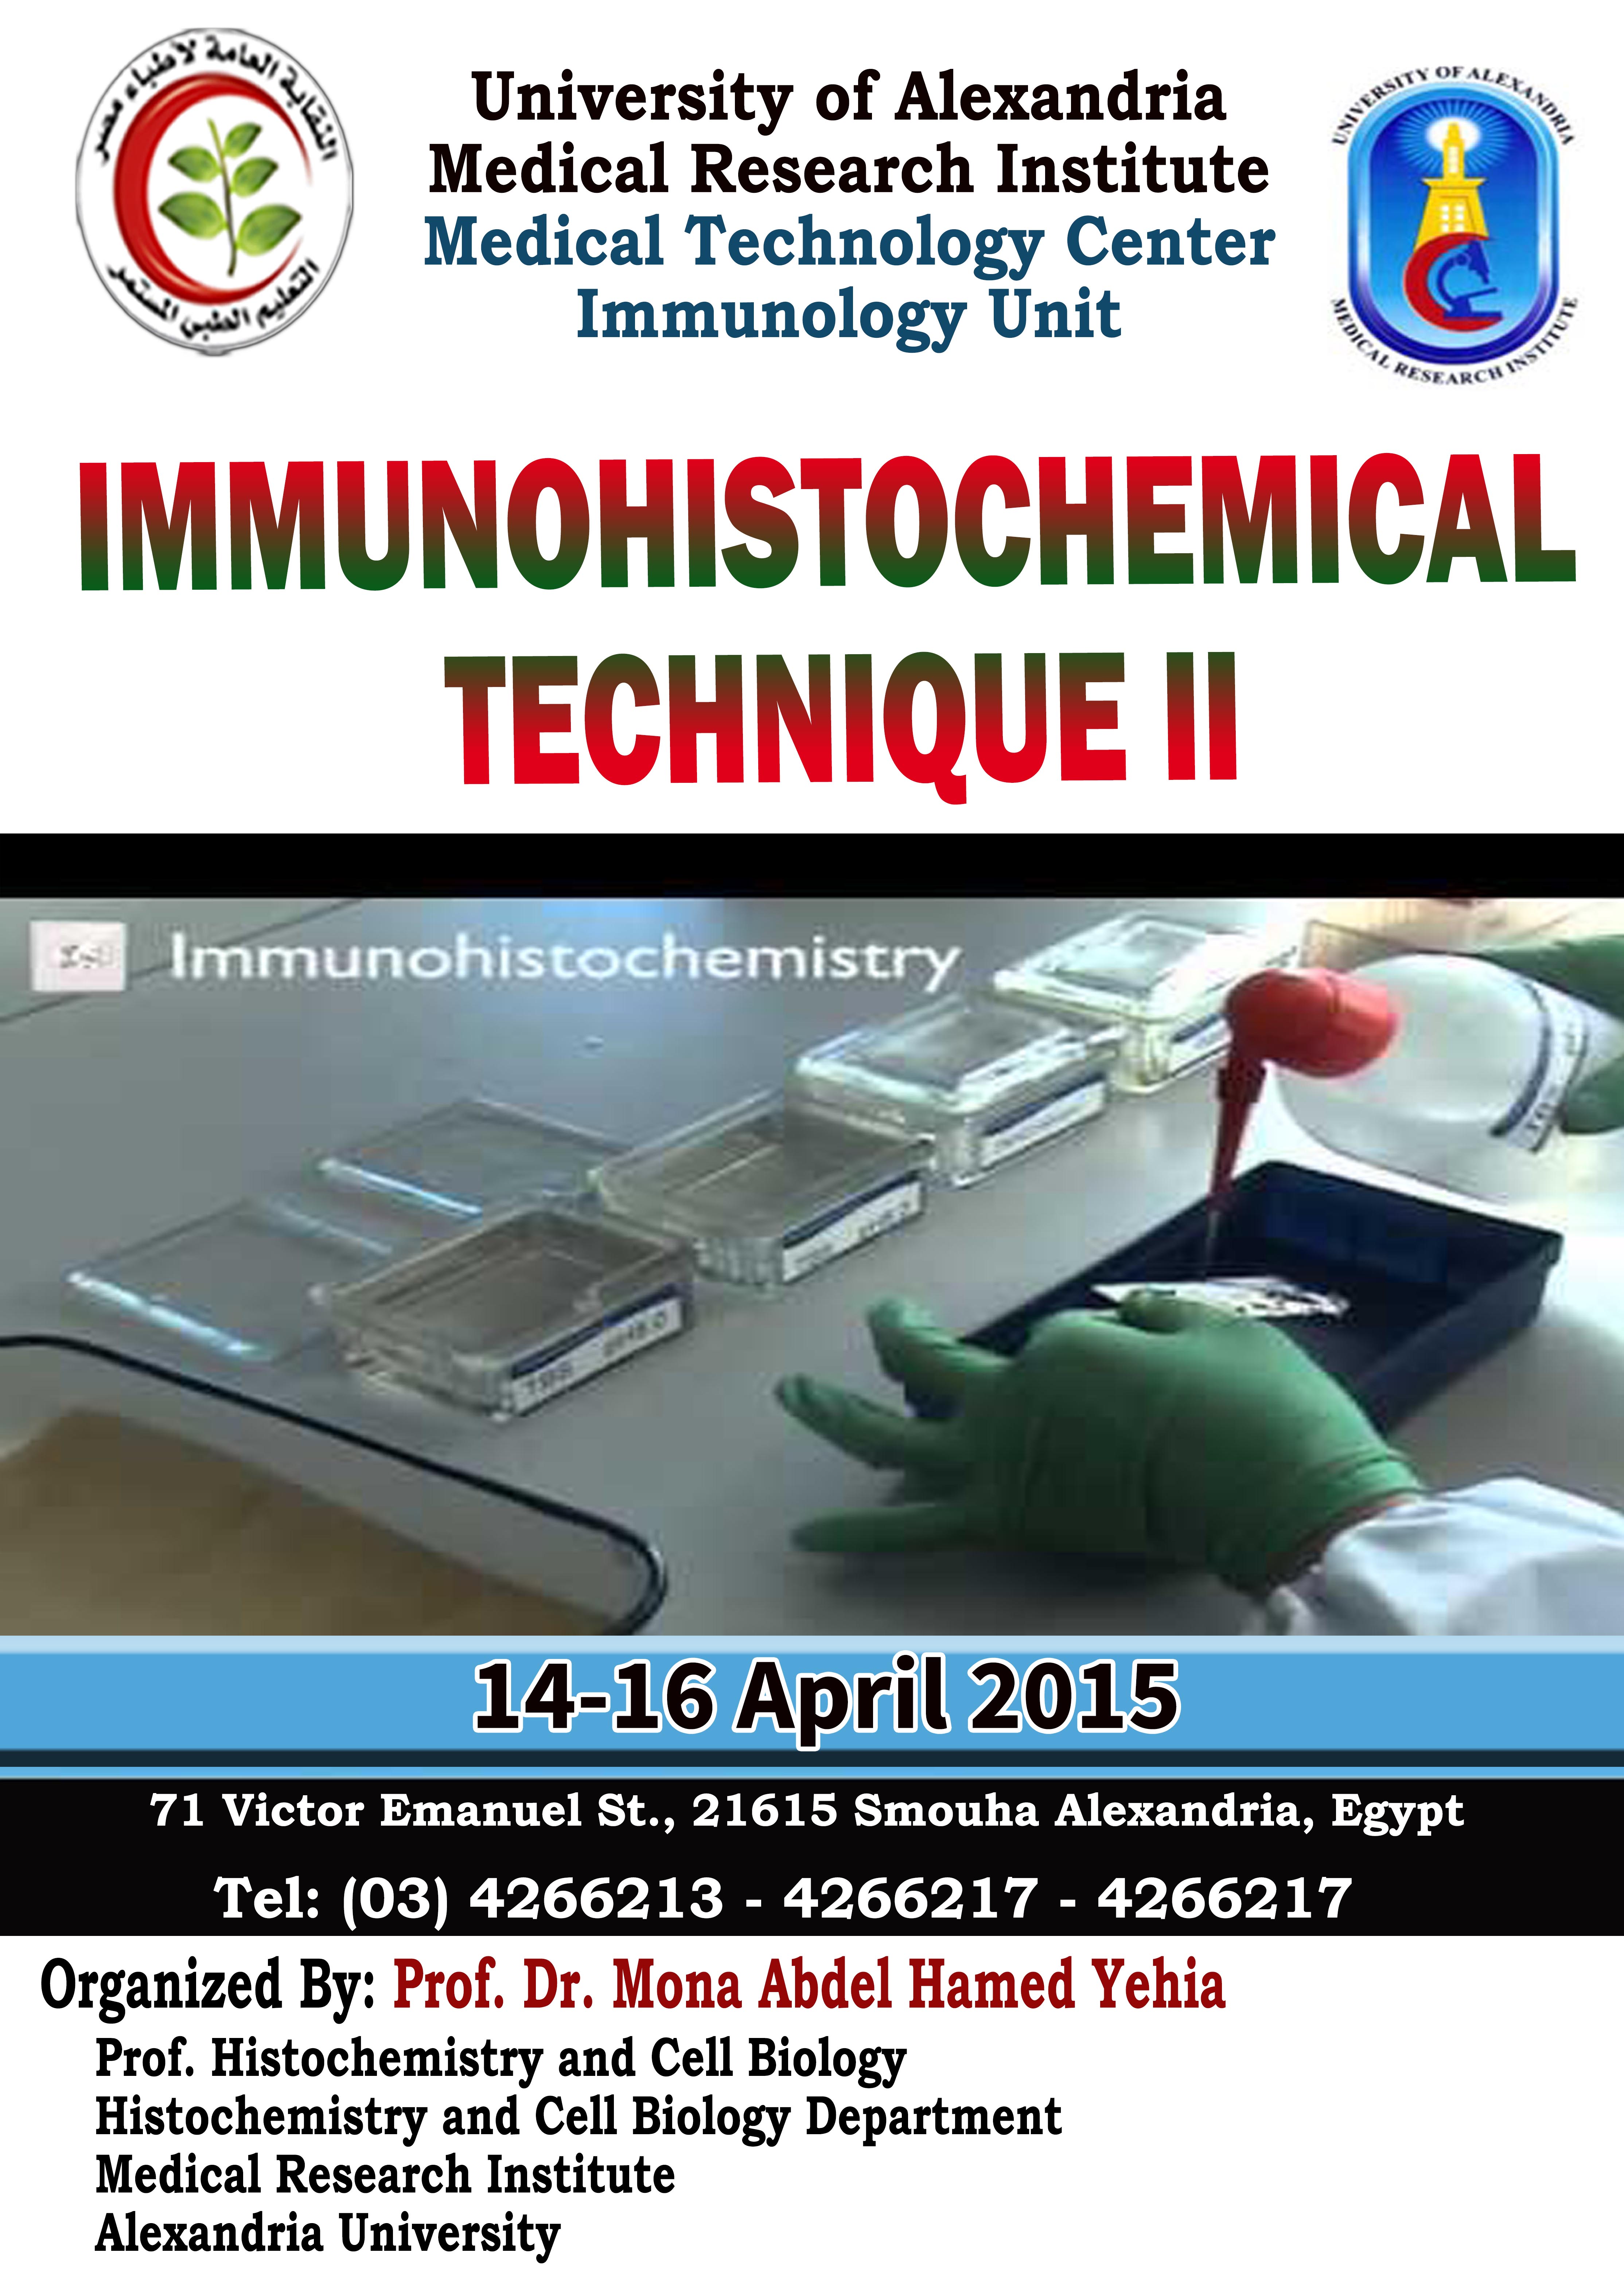 Immunohistochemical Technique II